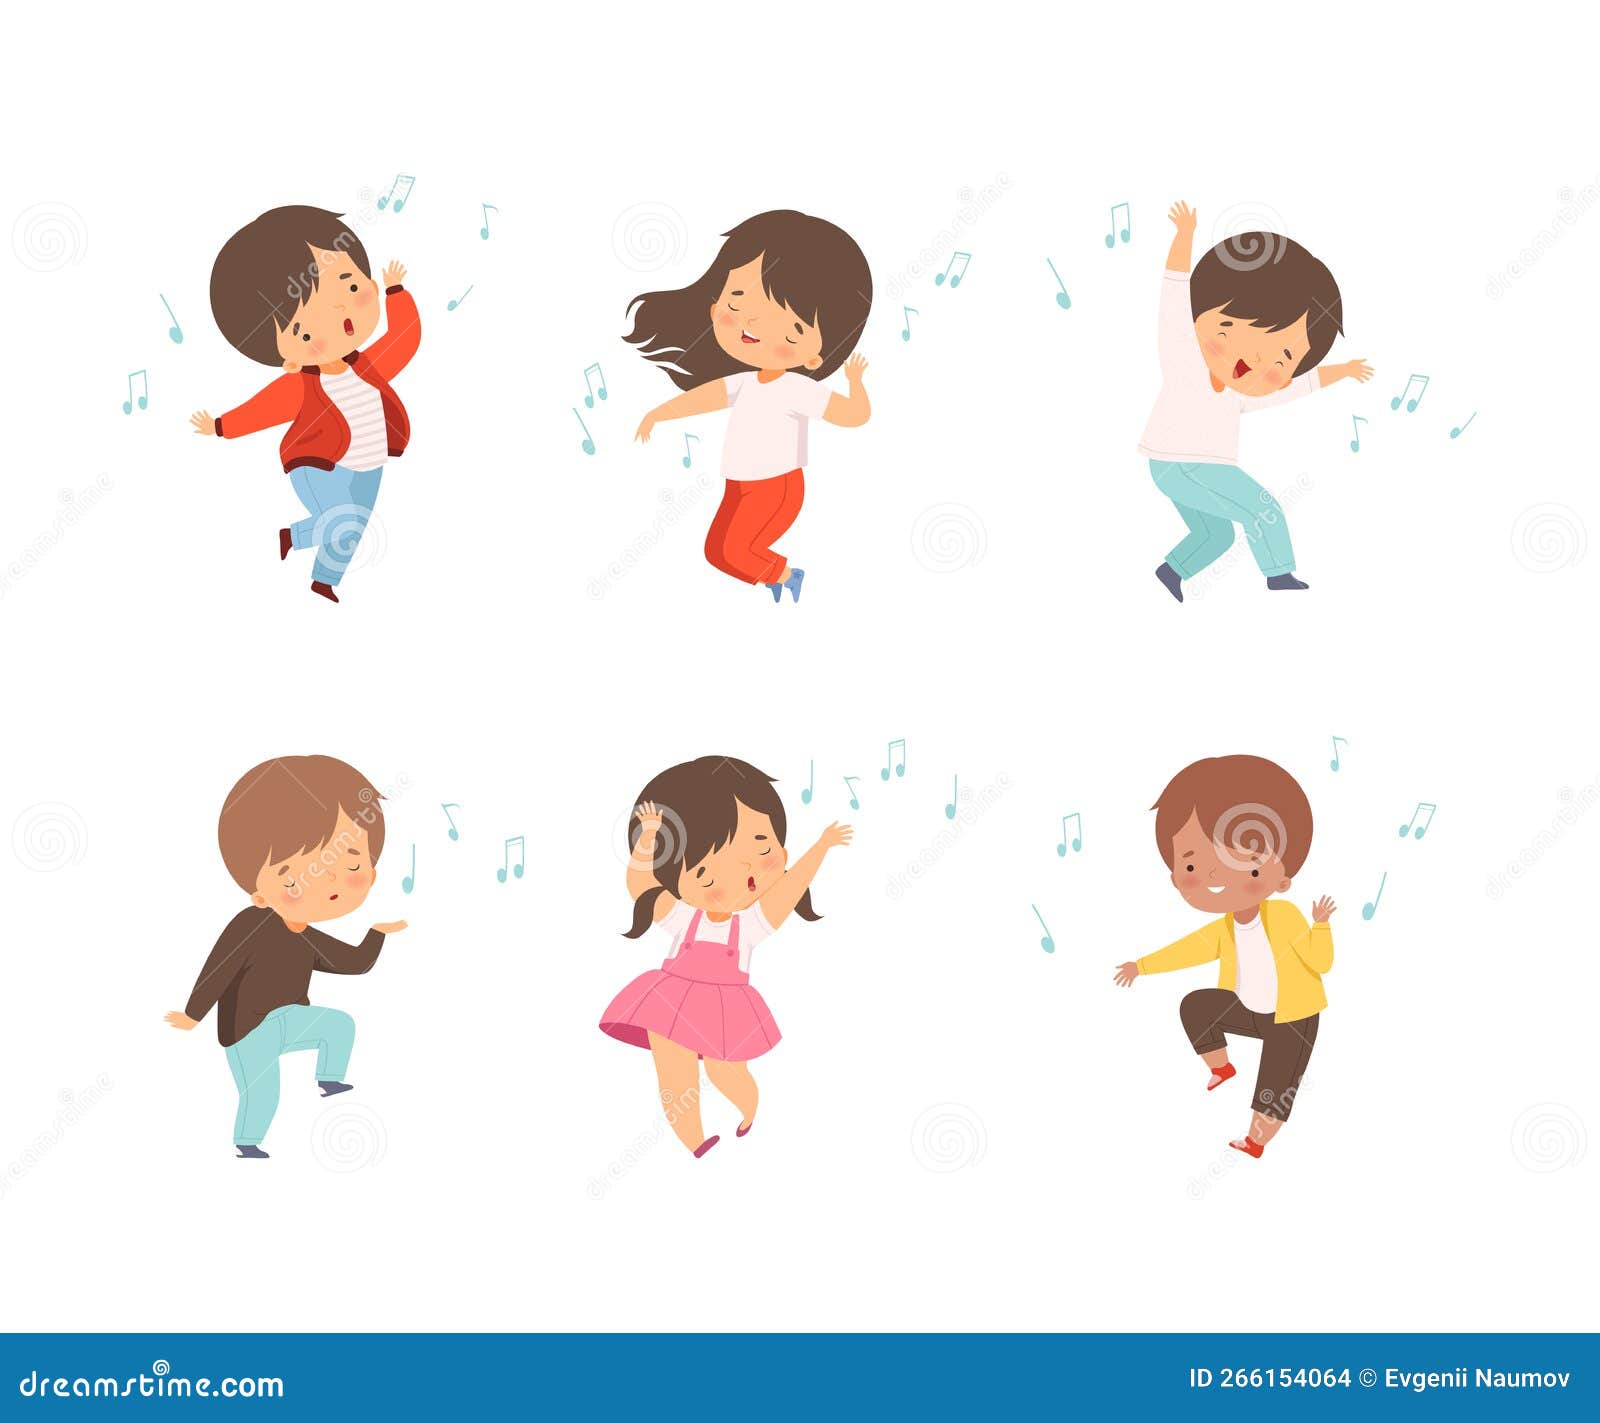 Um desenho animado de crianças tocando música e cantando